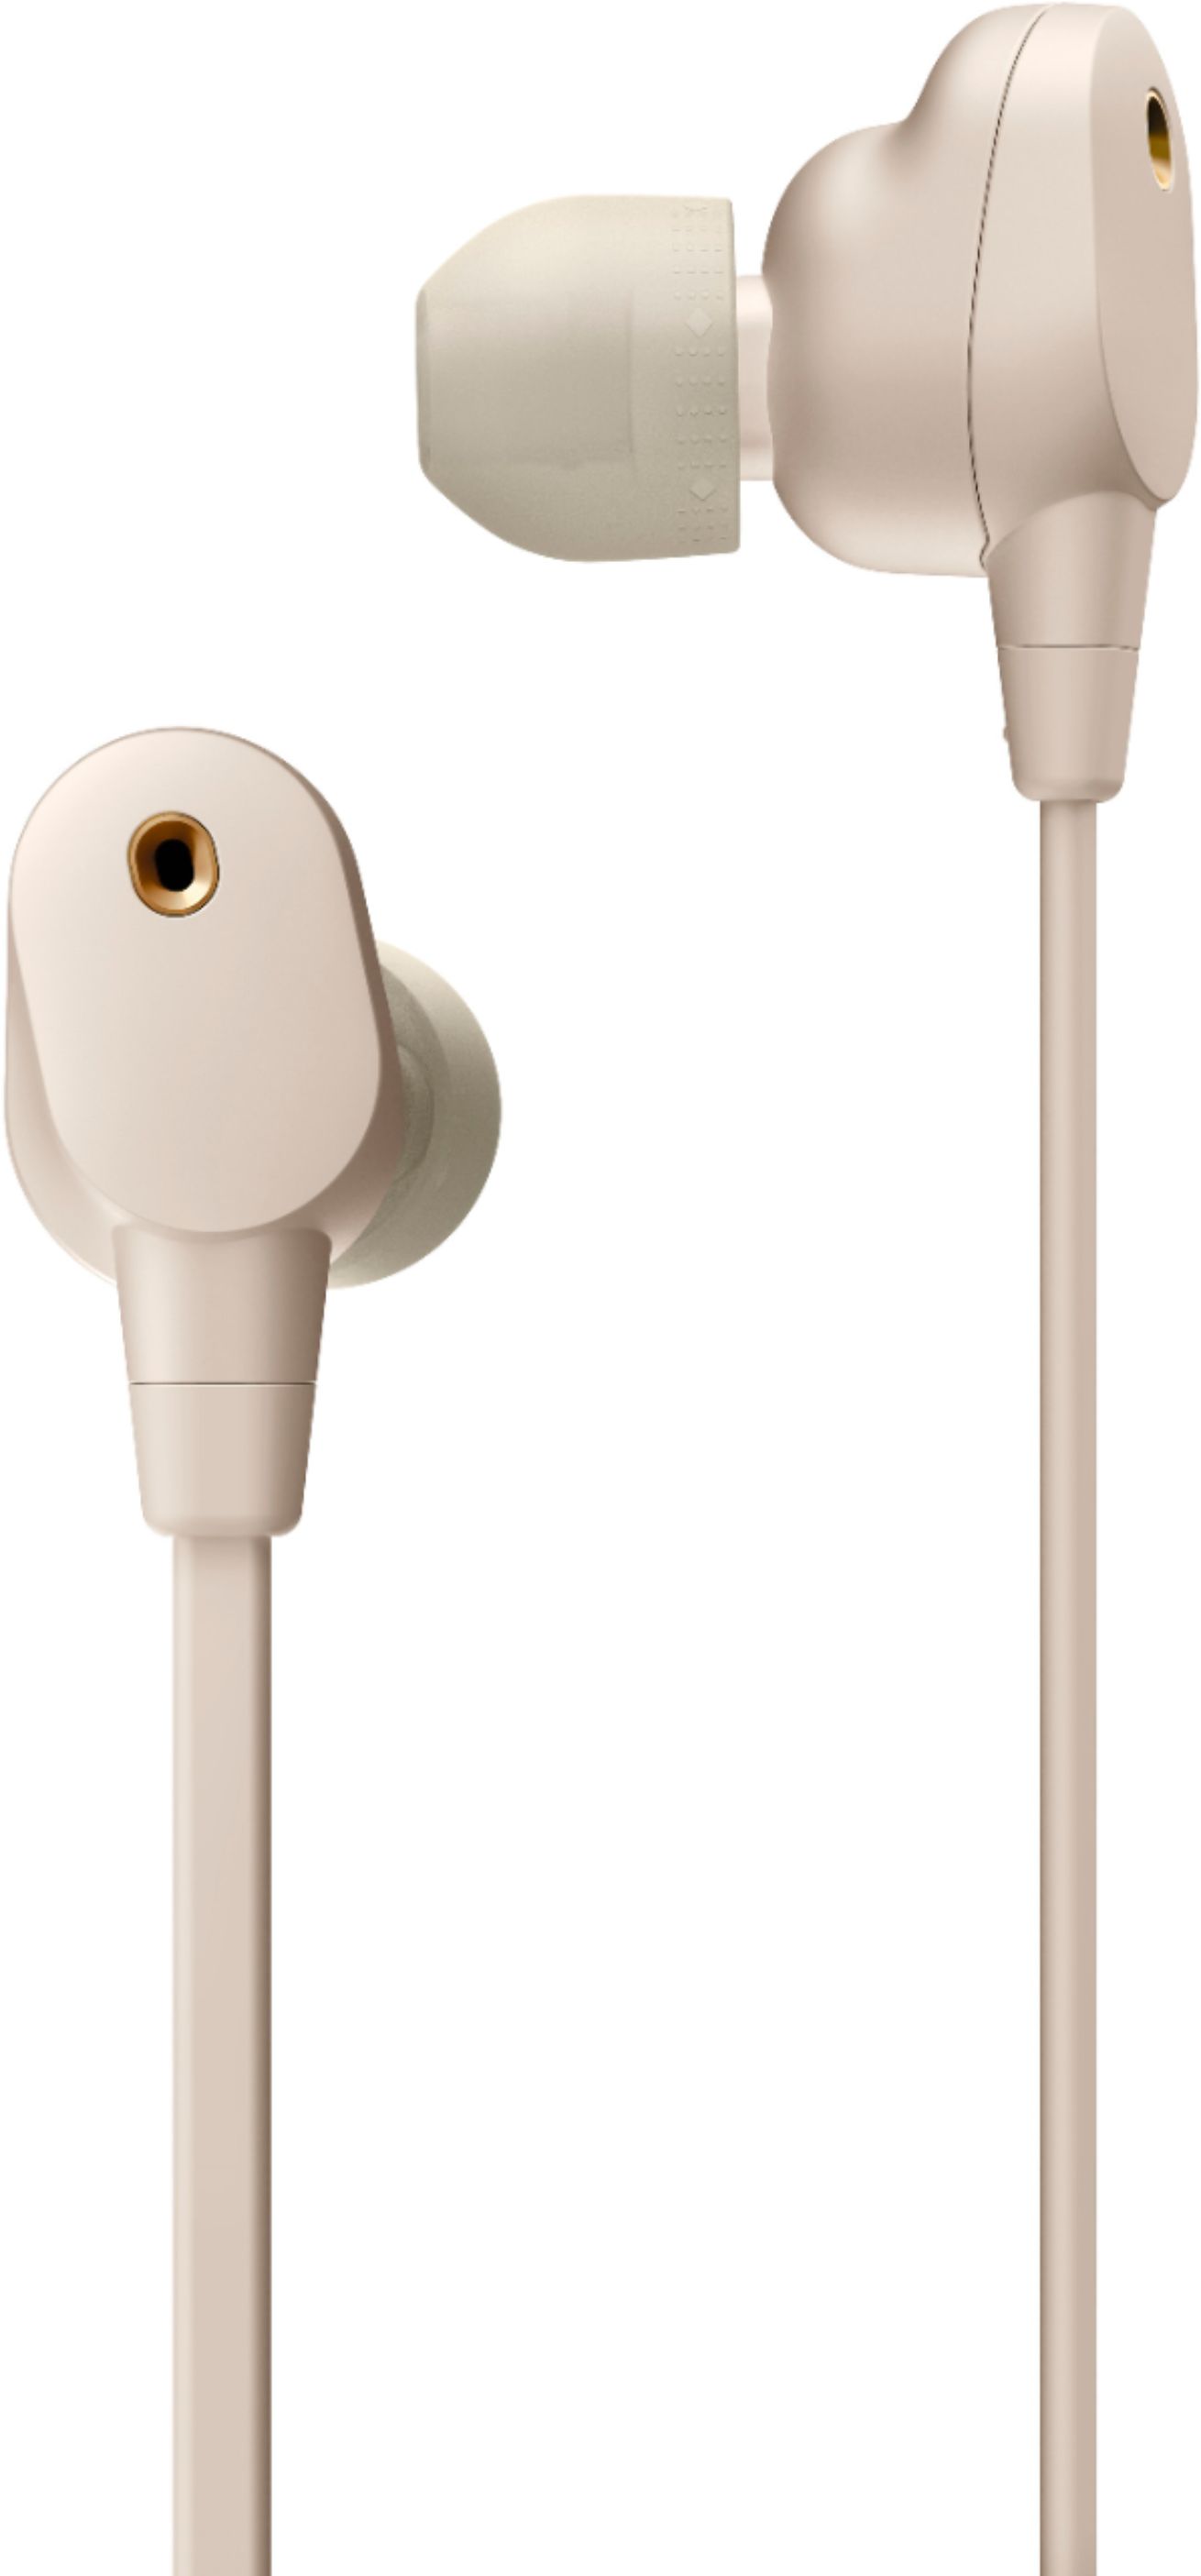 Best Buy: Sony WI1000XM2 Wireless Noise-Canceling In-Ear